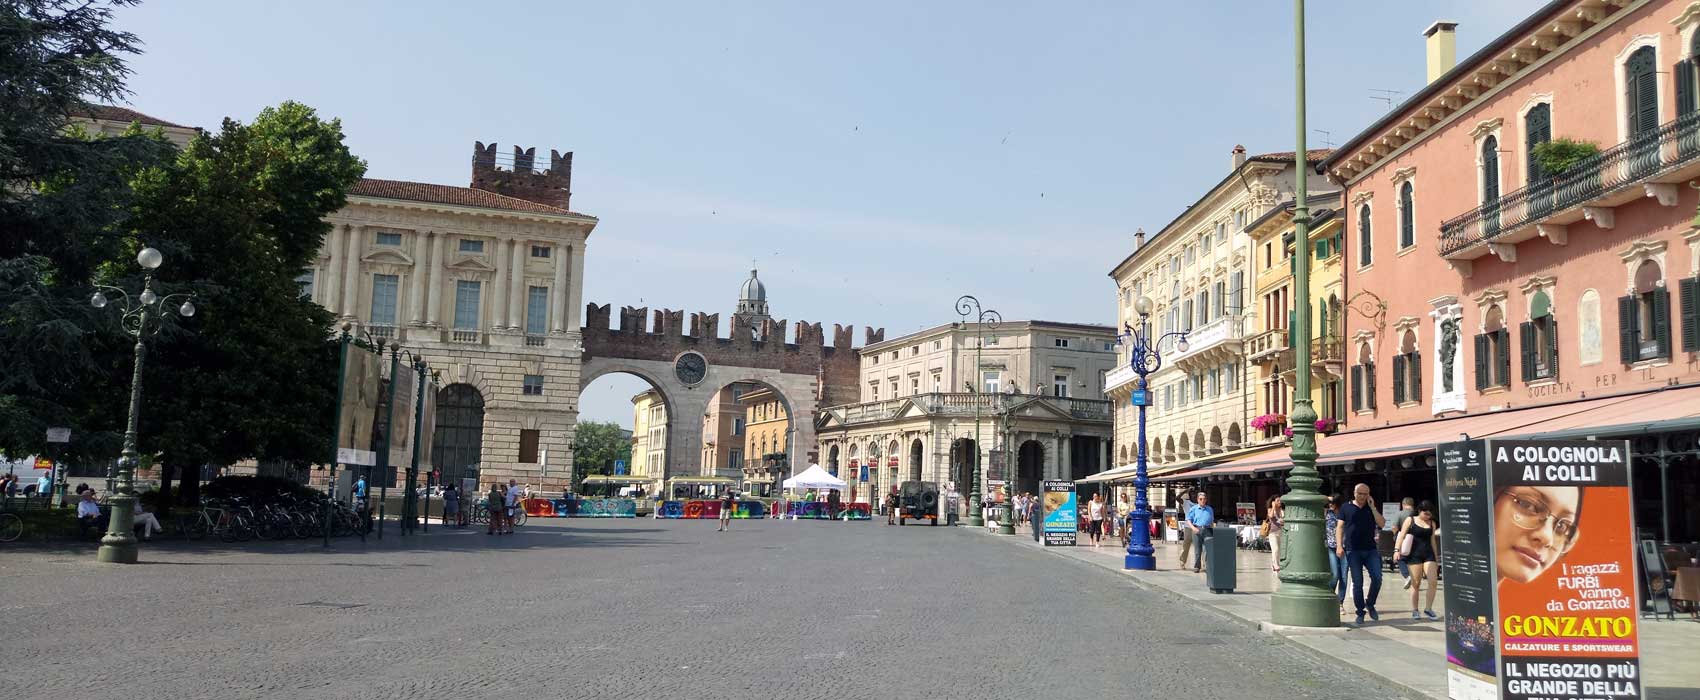 Die Piazza Bra von Verona